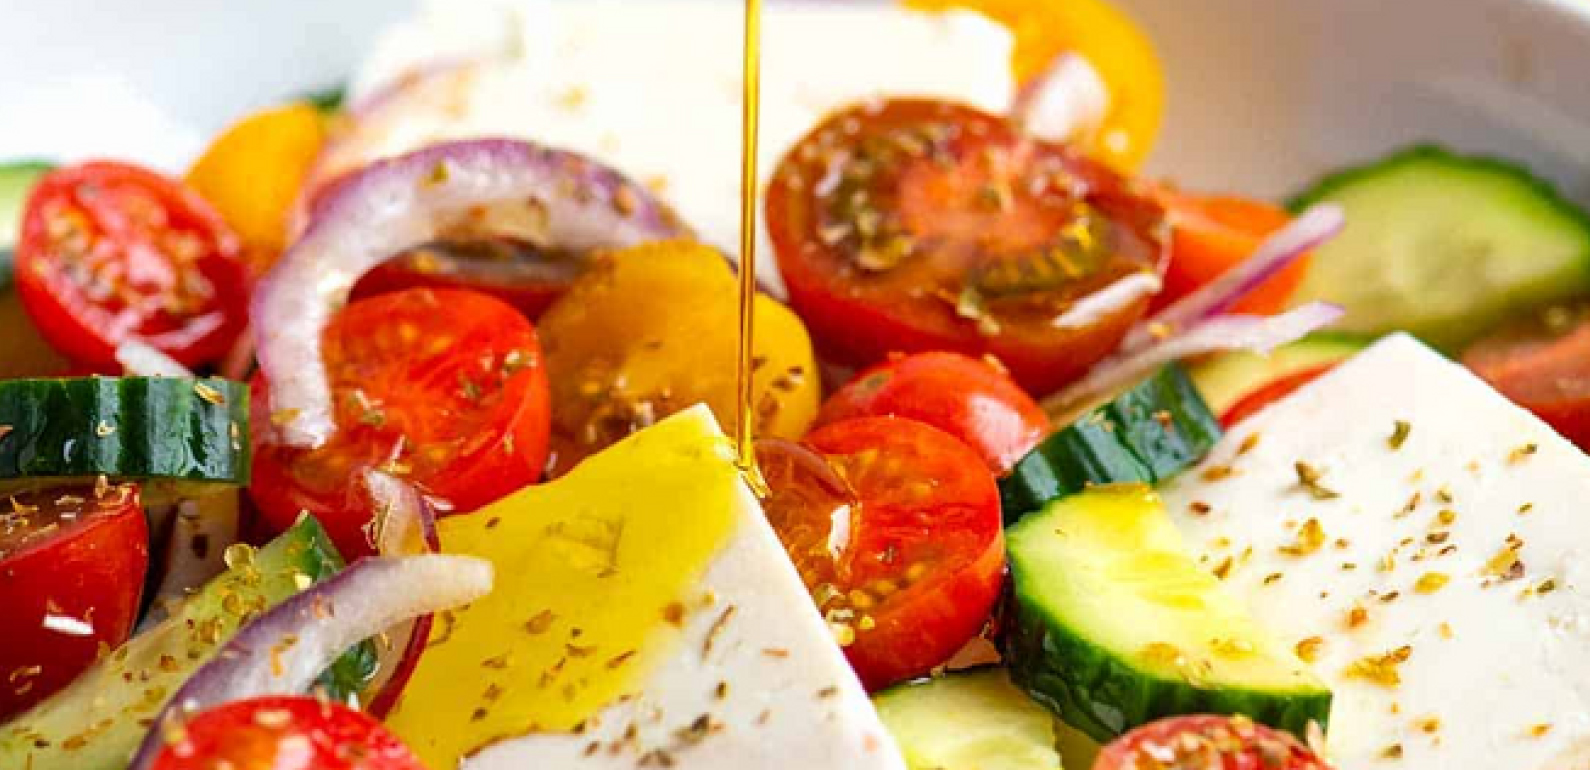 GREKISK SALLAD: Grekiska matrecept - kretensiska recept med olivolja